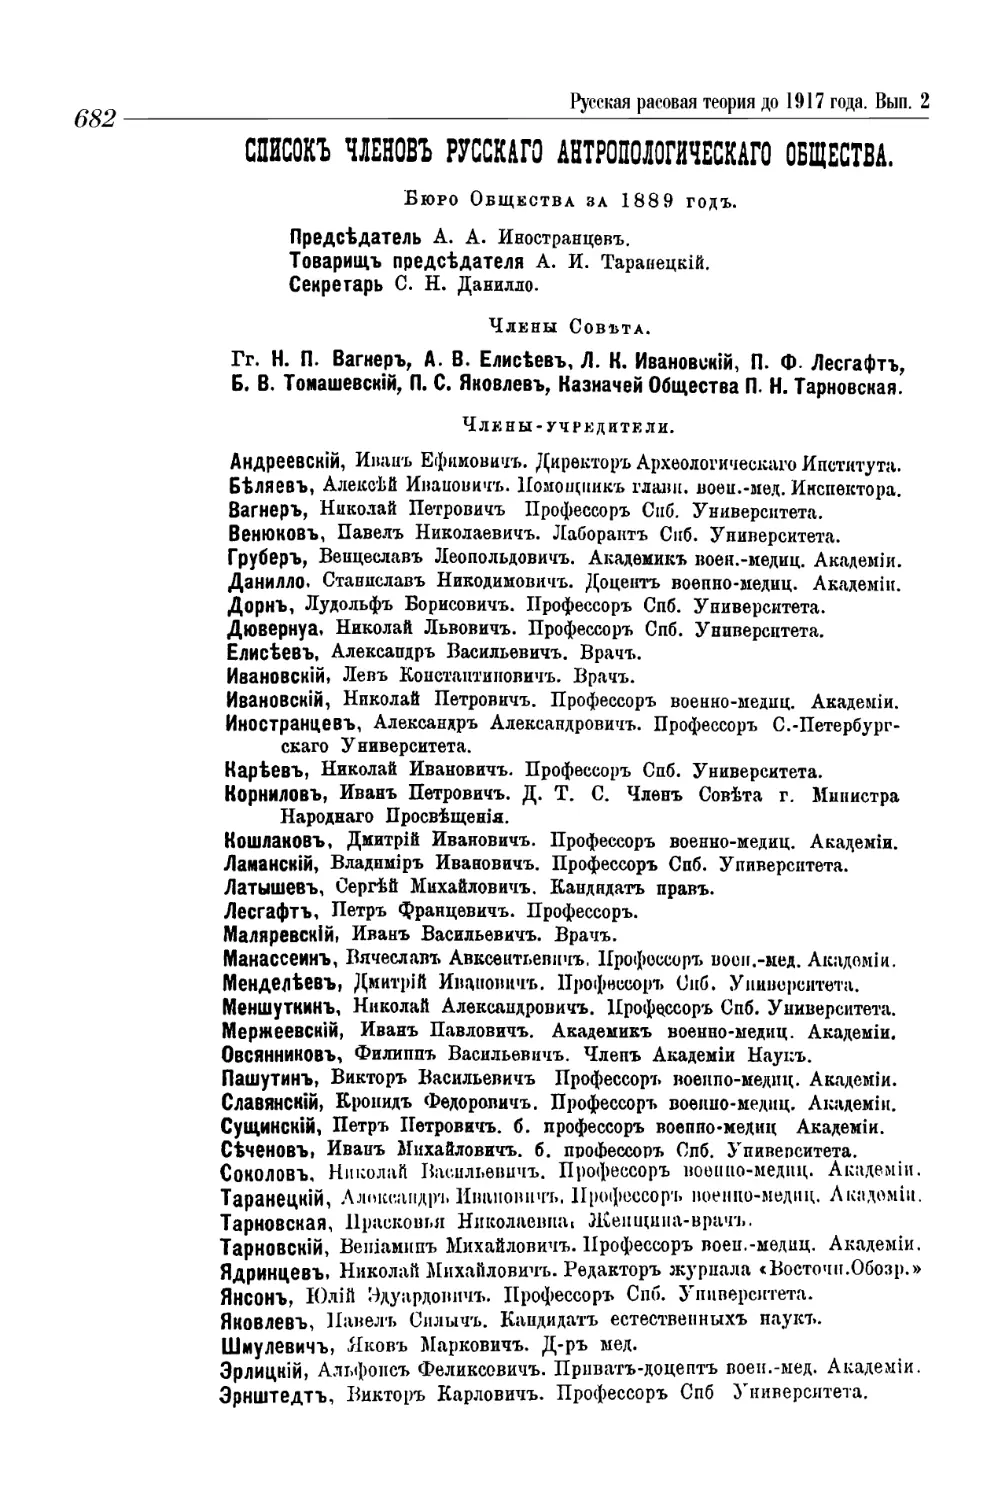 Приложение 1. Список членов Русского Антропологического Общества